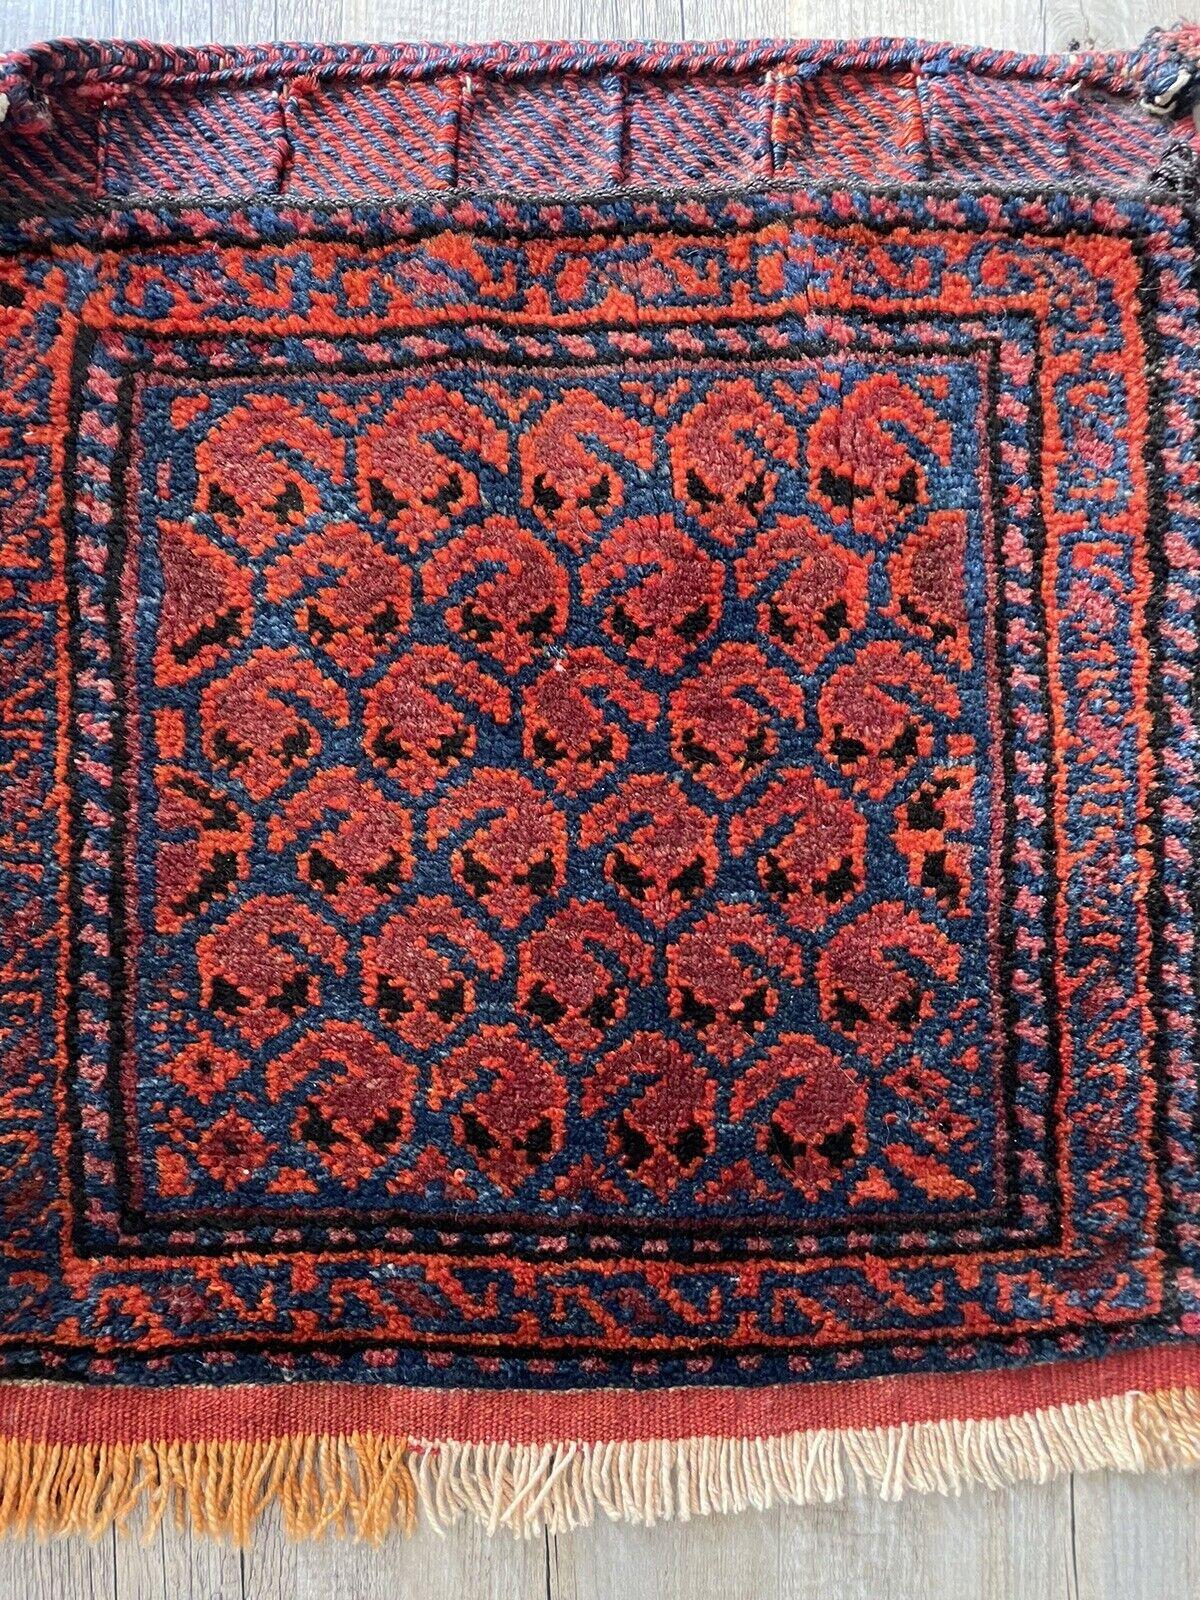 Ajoutez une touche d'élégance persane à votre collection avec cette face de sac Shiraz ancienne, fabriquée à la main et à collectionner. Fabriquée dans les années 1900, cette pièce exquise mesure 42 cm x 46 cm (1,3' x 1,5') et est en bon état. Elle